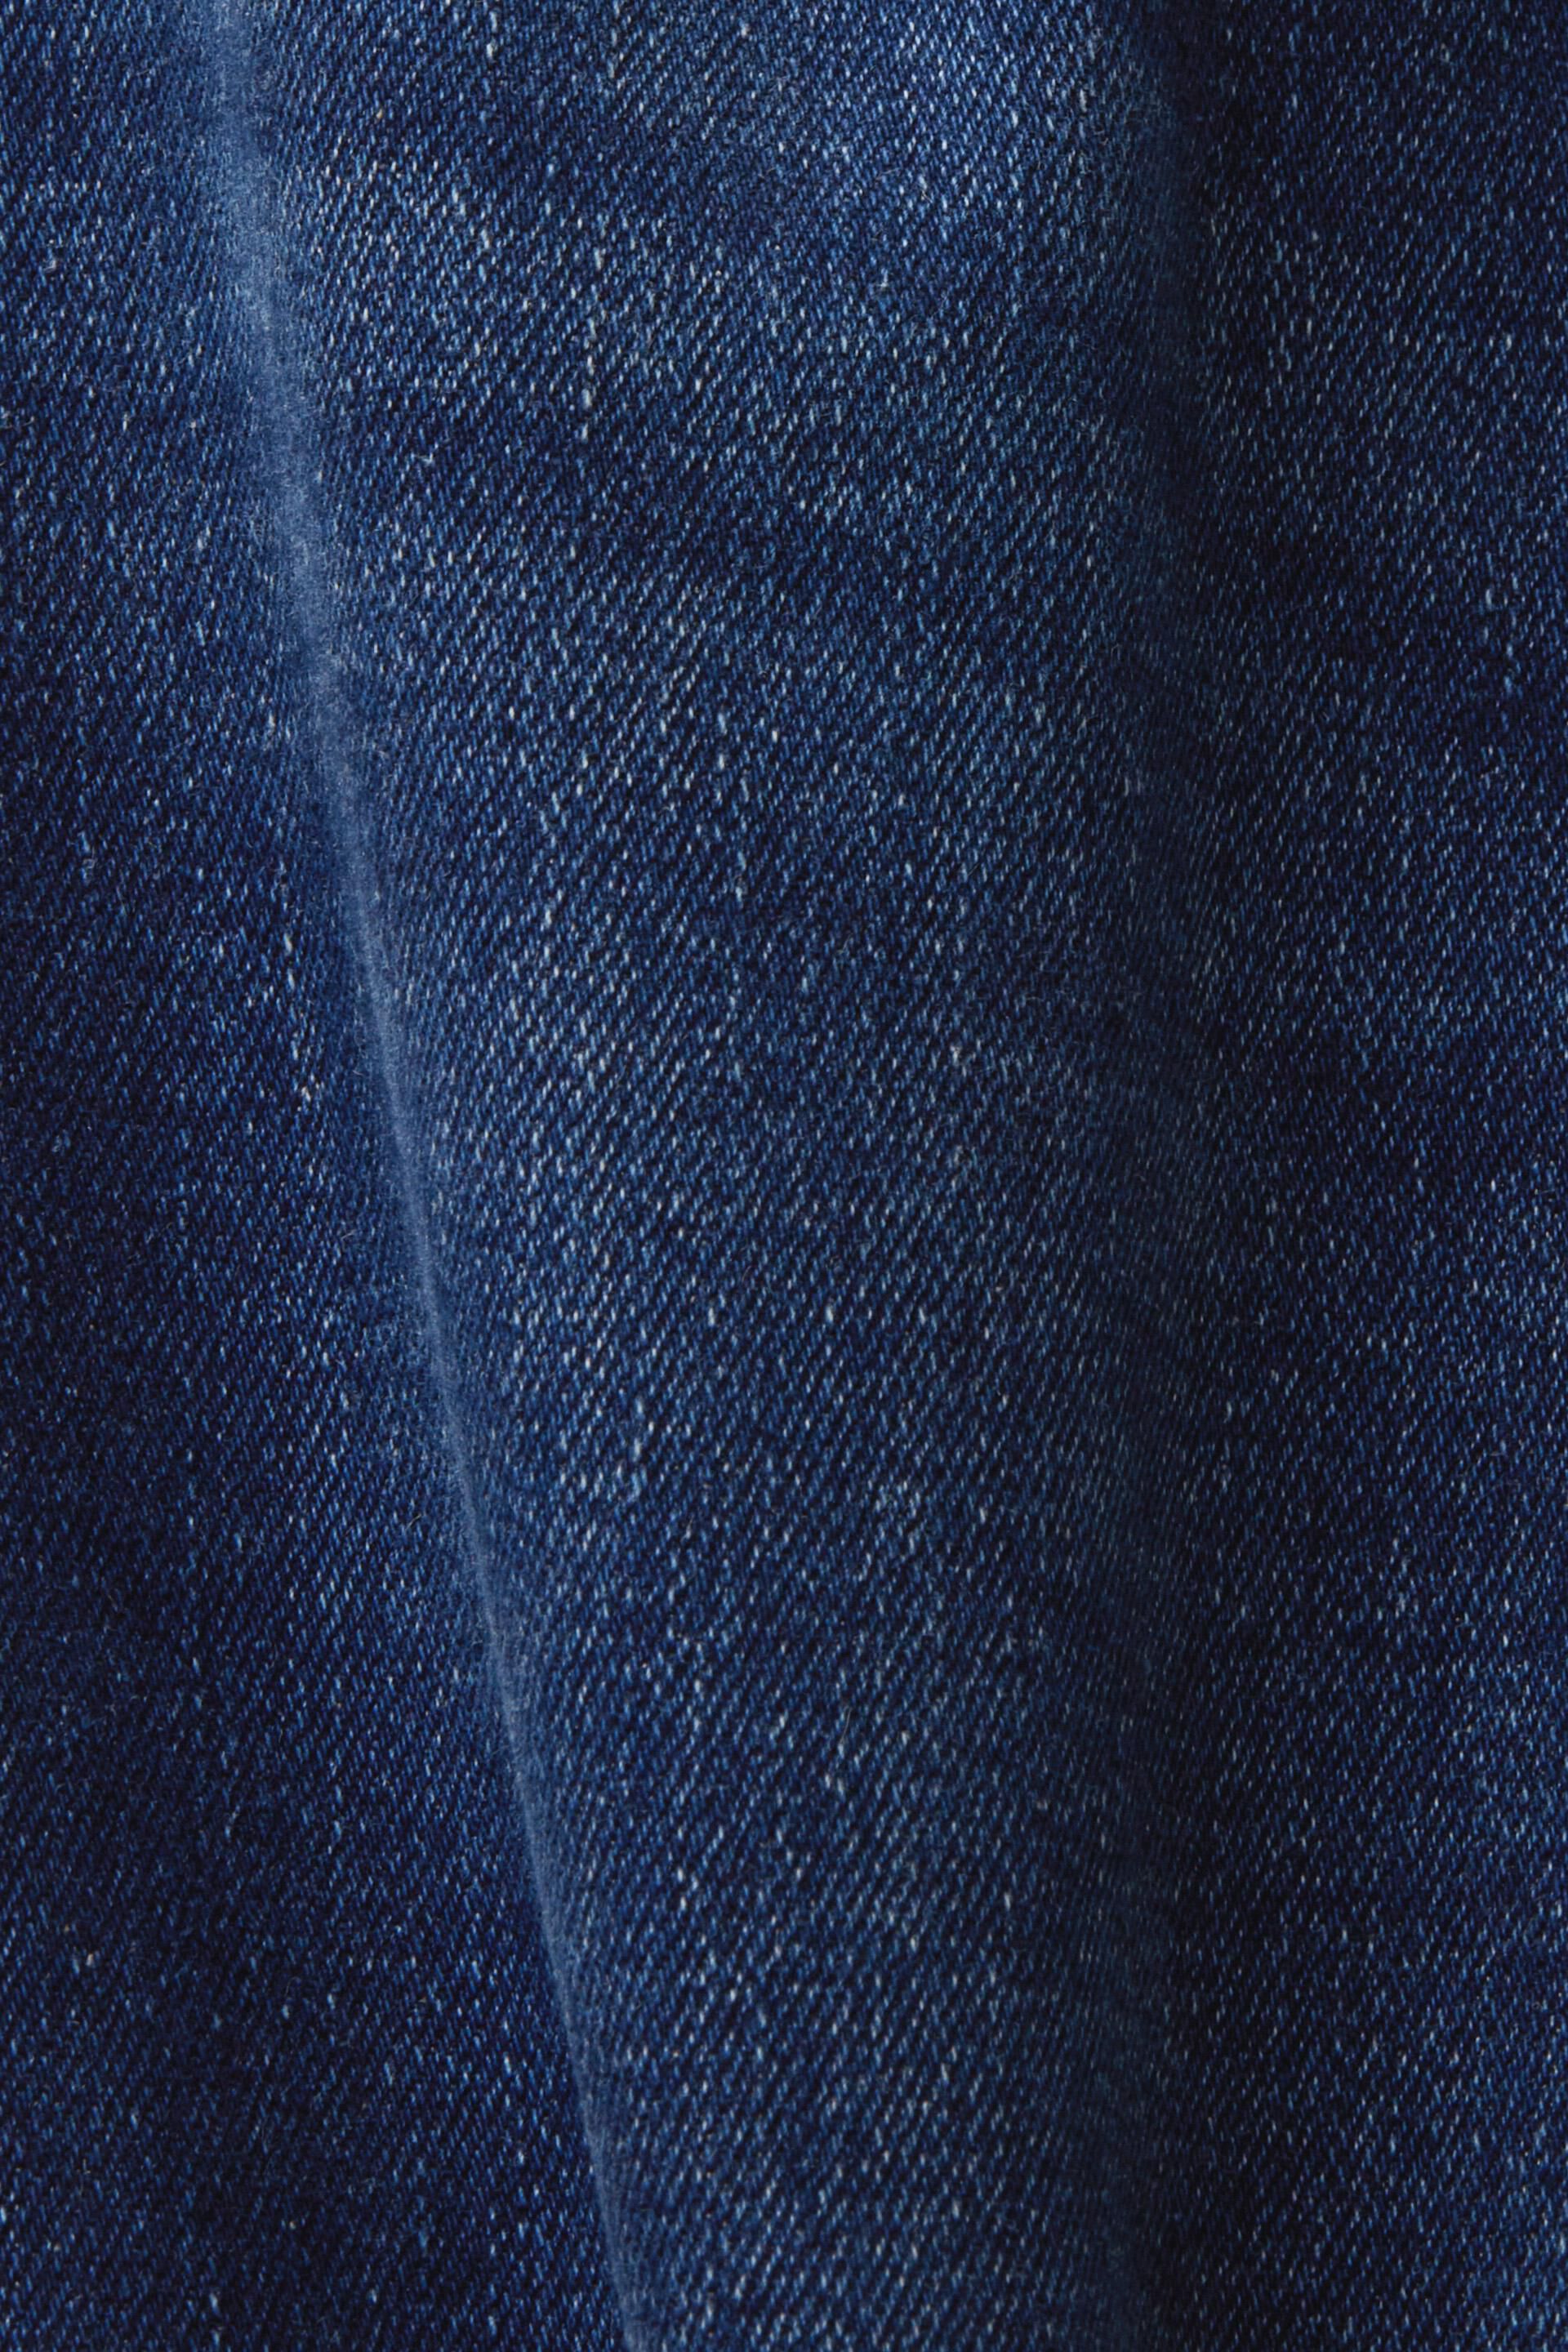 Esprit Damen Recycelt: Bootcut-Jeans mit hohem Bund